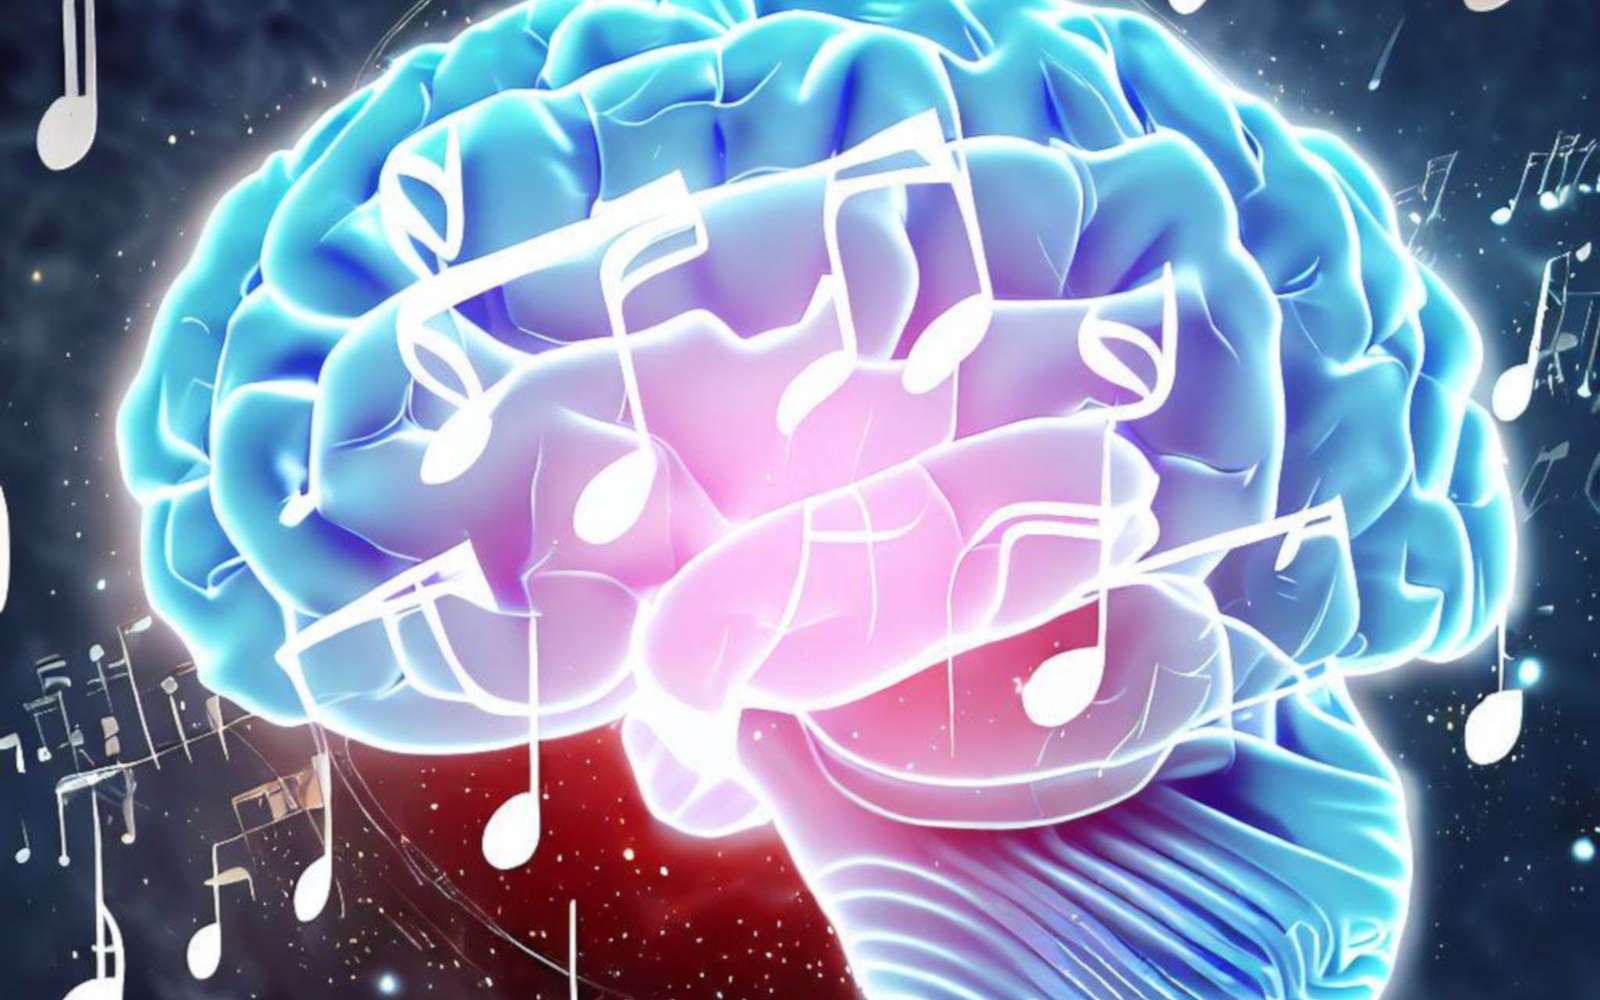 Une chanson des Pink Floyd reconstruite avec l'activité cérébrale